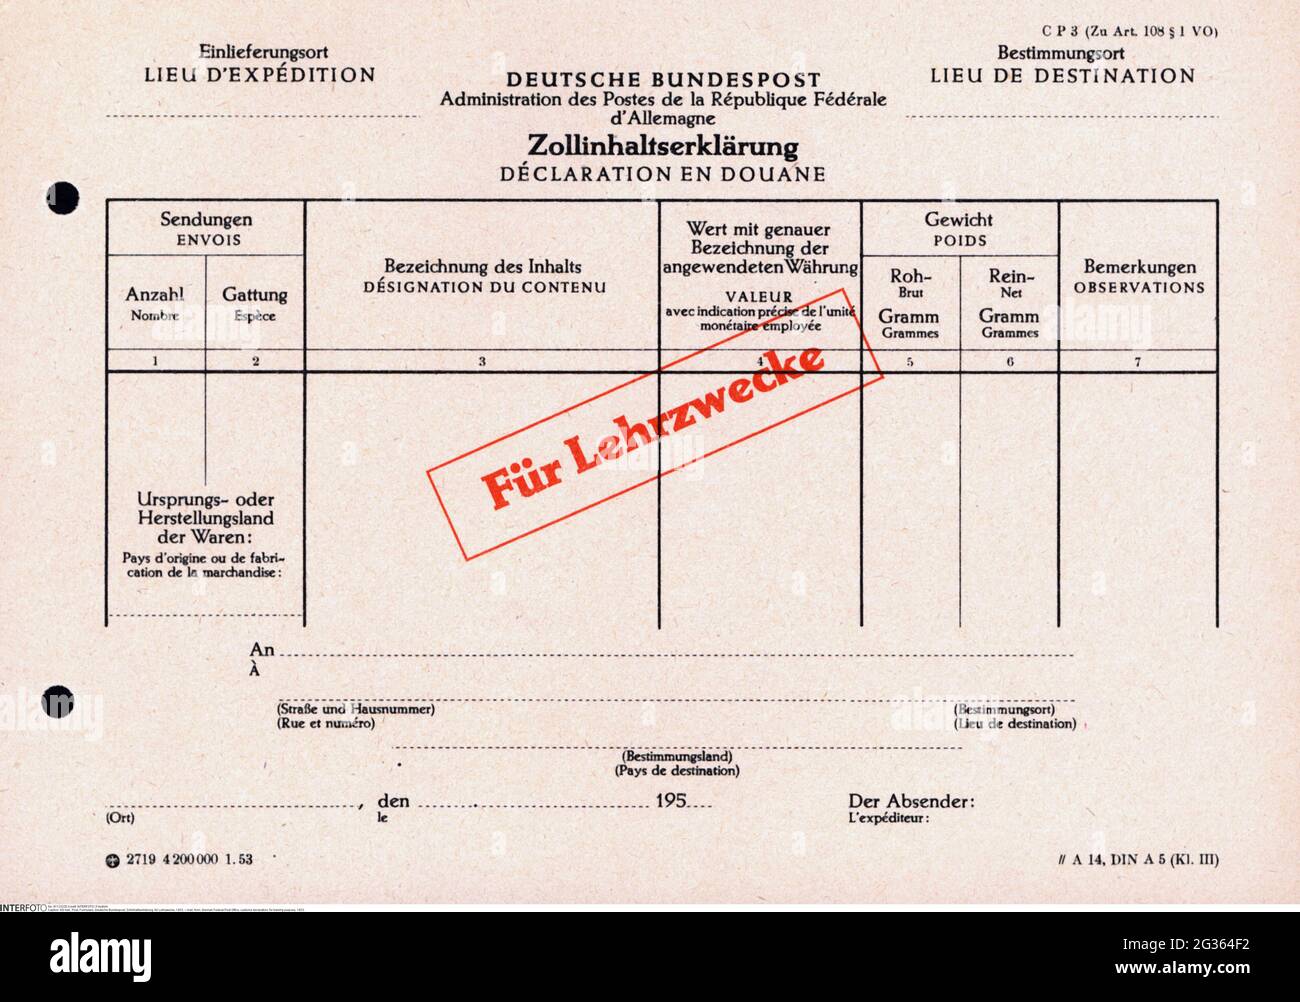 Courrier, formulaire, poste fédérale allemande, déclaration douanière, à des fins de formation, 1953, INFO-DROITS-DÉDOUANEMENT-SUPPLÉMENTAIRES-NON-DISPONIBLE Banque D'Images